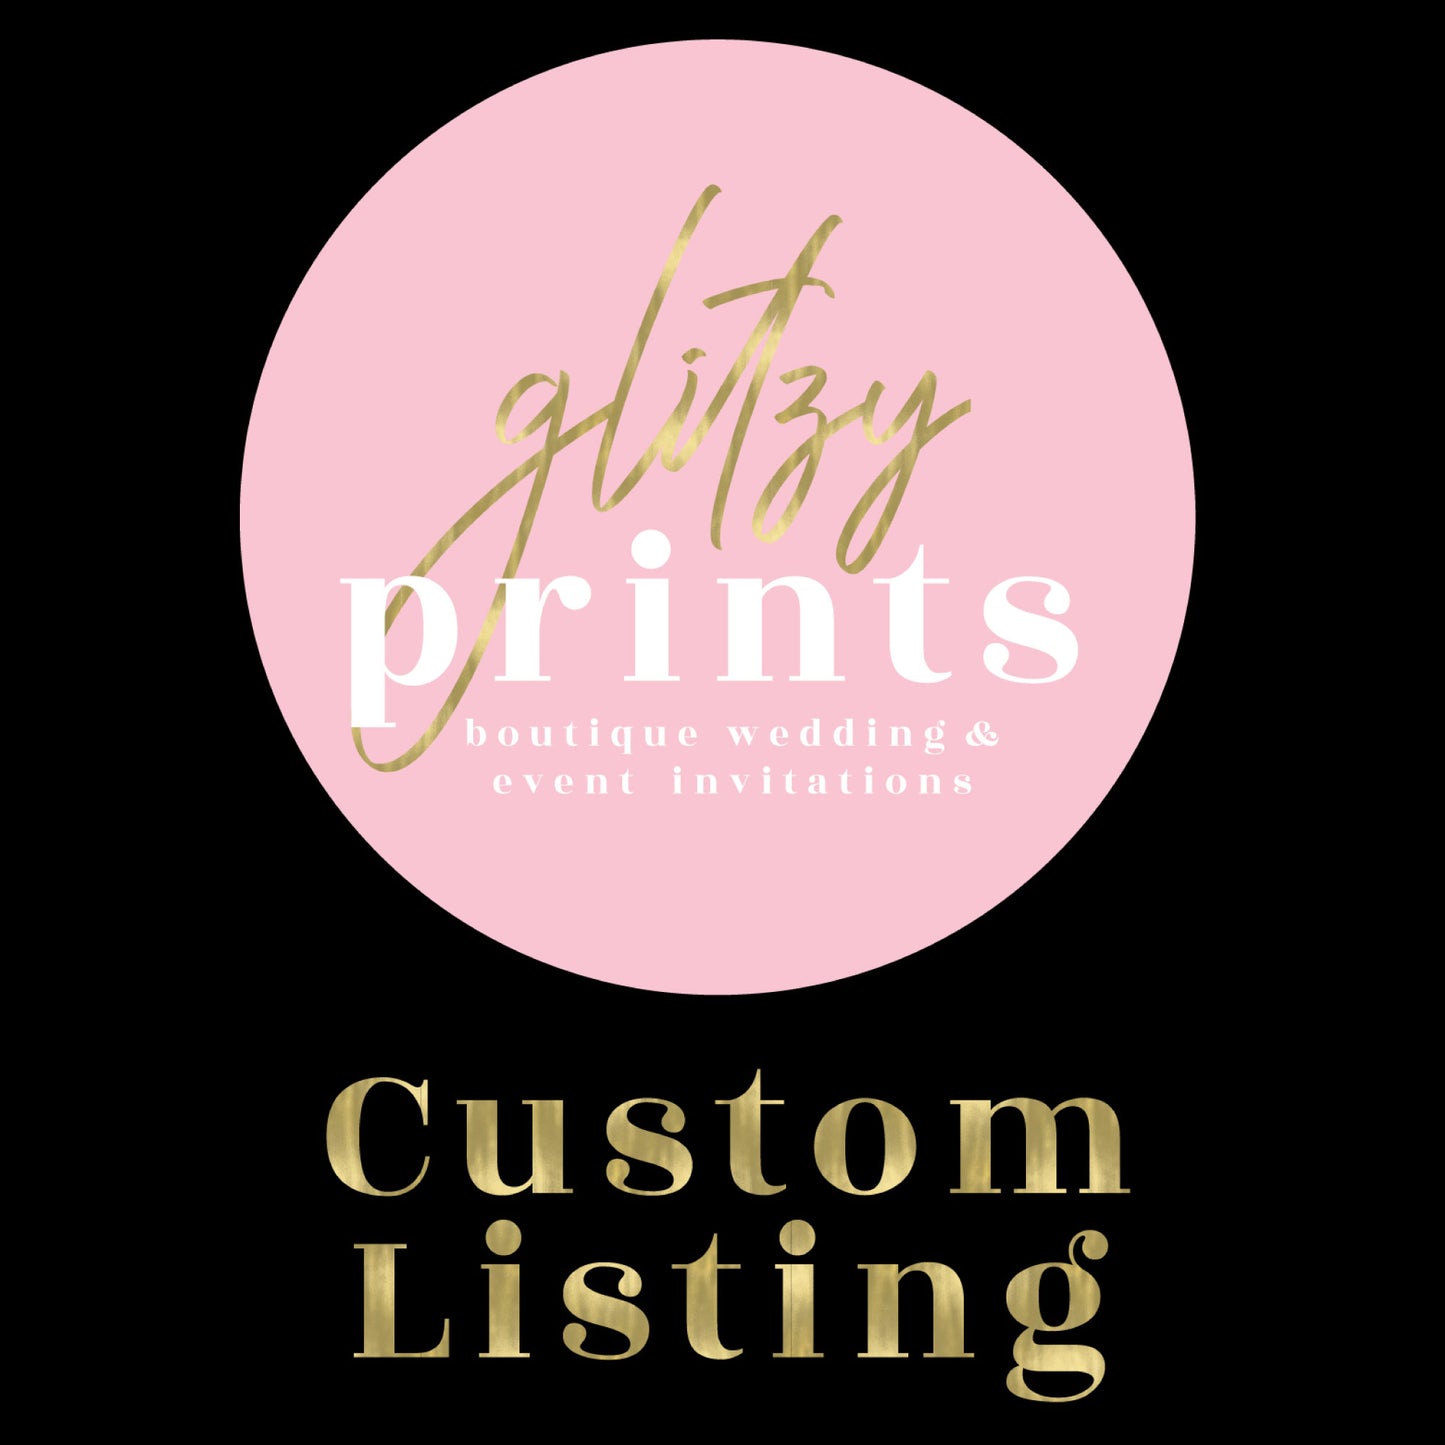 Custom Listing for Ashley